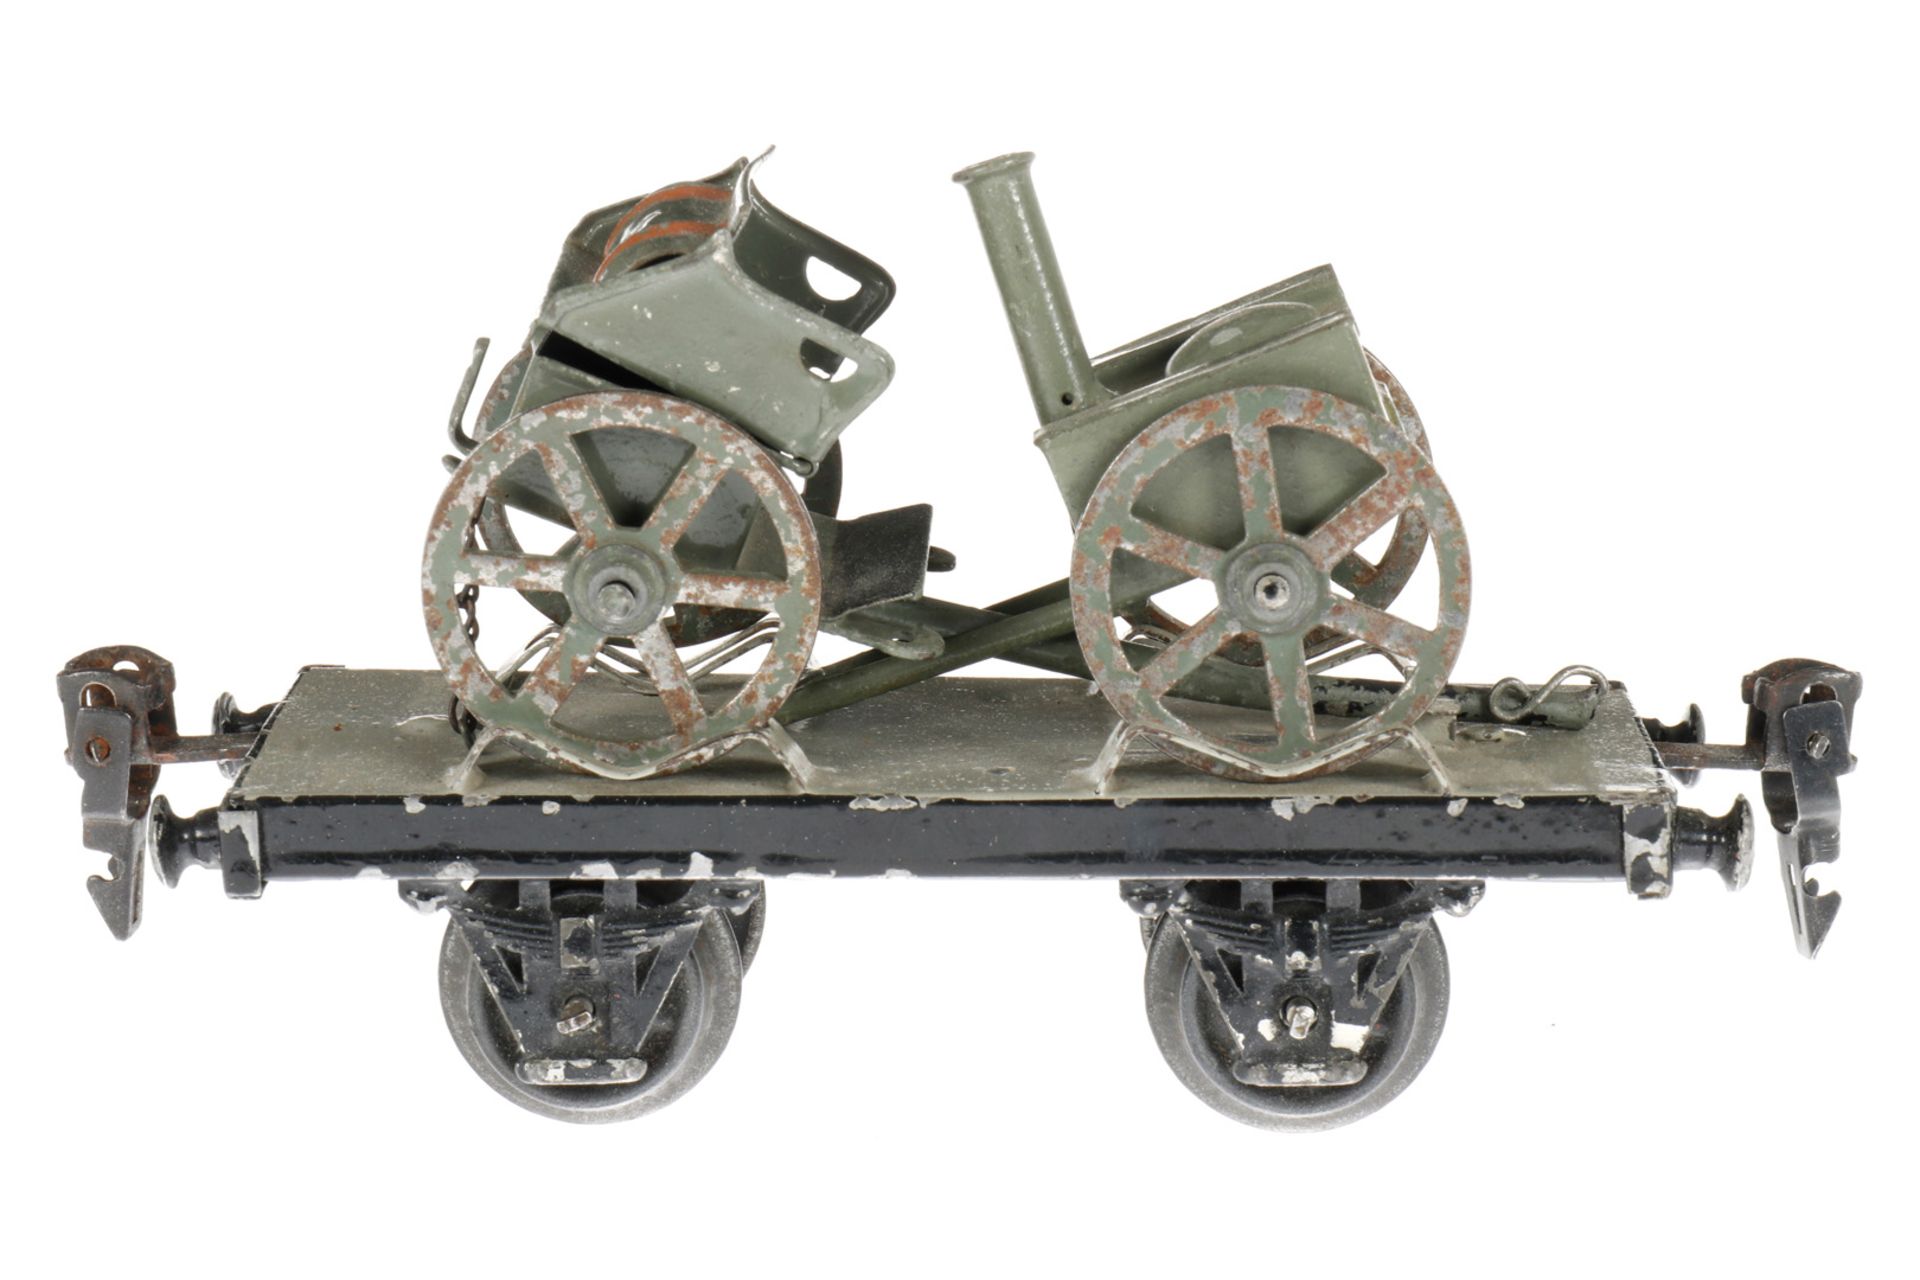 Märklin Militär-Plattformwagen 1925/8400/9, S 0, uralt, HL, mit Feldküche und Protze, LS und